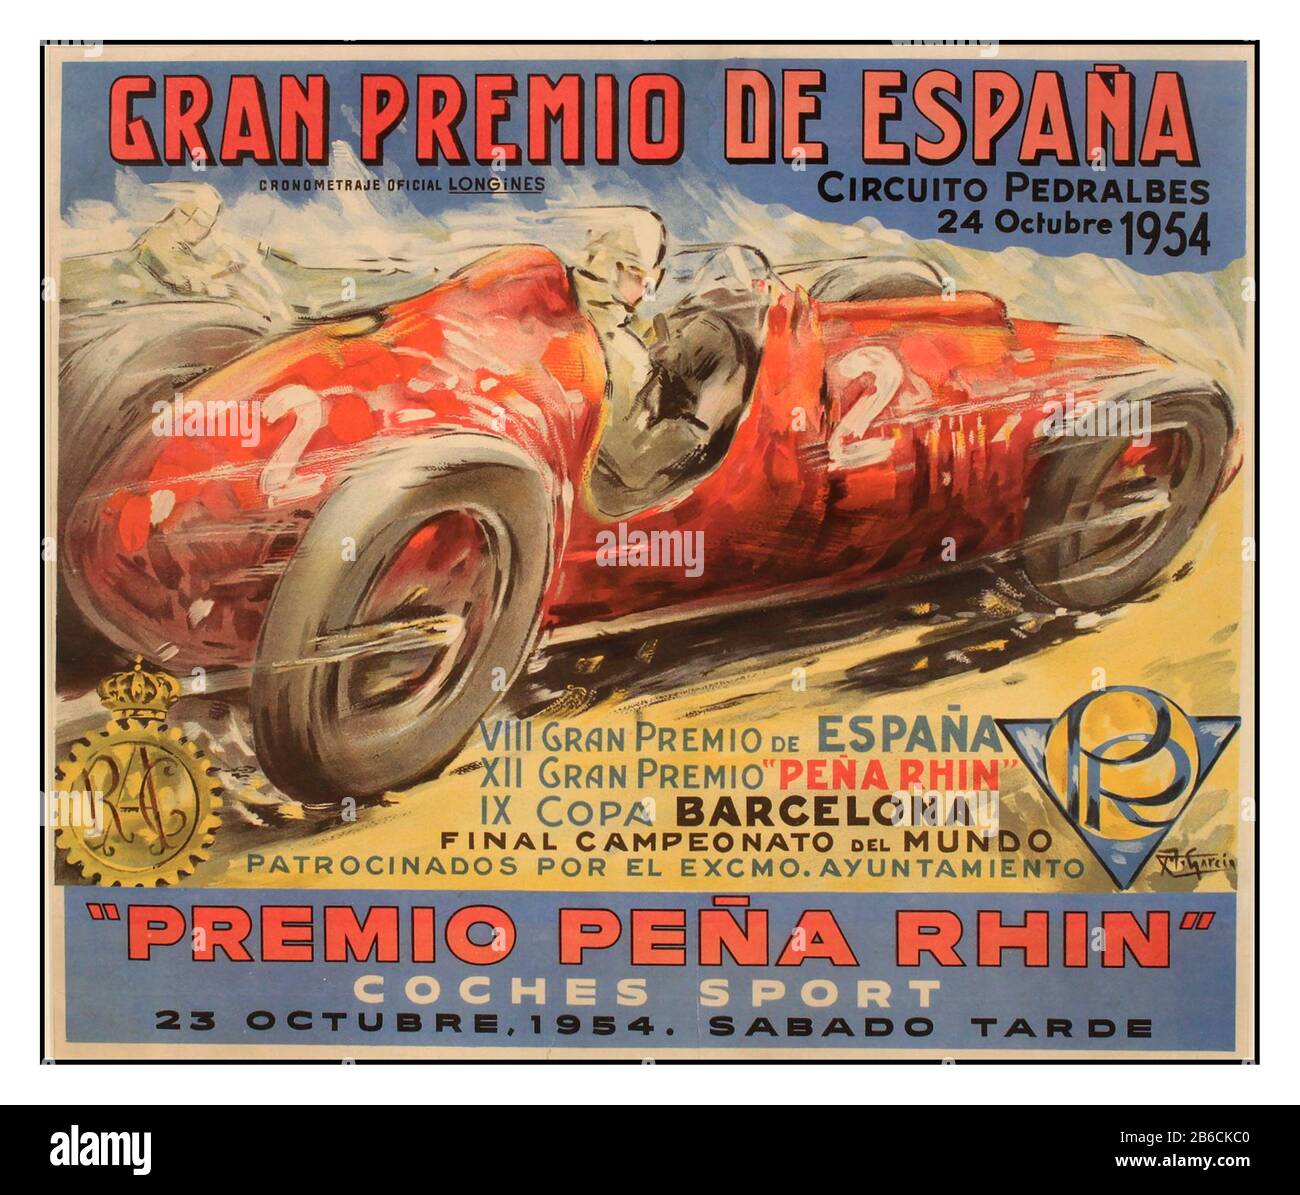 Vintage 1954 Motor Racing Poster Gran Premio di Spagna 1954 – Gran Premio de España 1954 – Peña Rhin Il Gran Premio del Reno è stato un evento di Gran Premio organizzato in tre diversi circuiti in tre epoche diverse in Spagna. La gara si è svolta a intermittenza nel corso della sua storia, a volte per le auto di grandi dimensioni Grand Prix, a volte per le auto sportive. Negli anni Cinquanta si tenne al circuito di Pedralbes. Questo poster del Gran Premio de Espana circuito Pedralbes è stato creato da M Garcia per il Premio pena Rhin che si è svolto il 24 ottobre 1954. Foto Stock